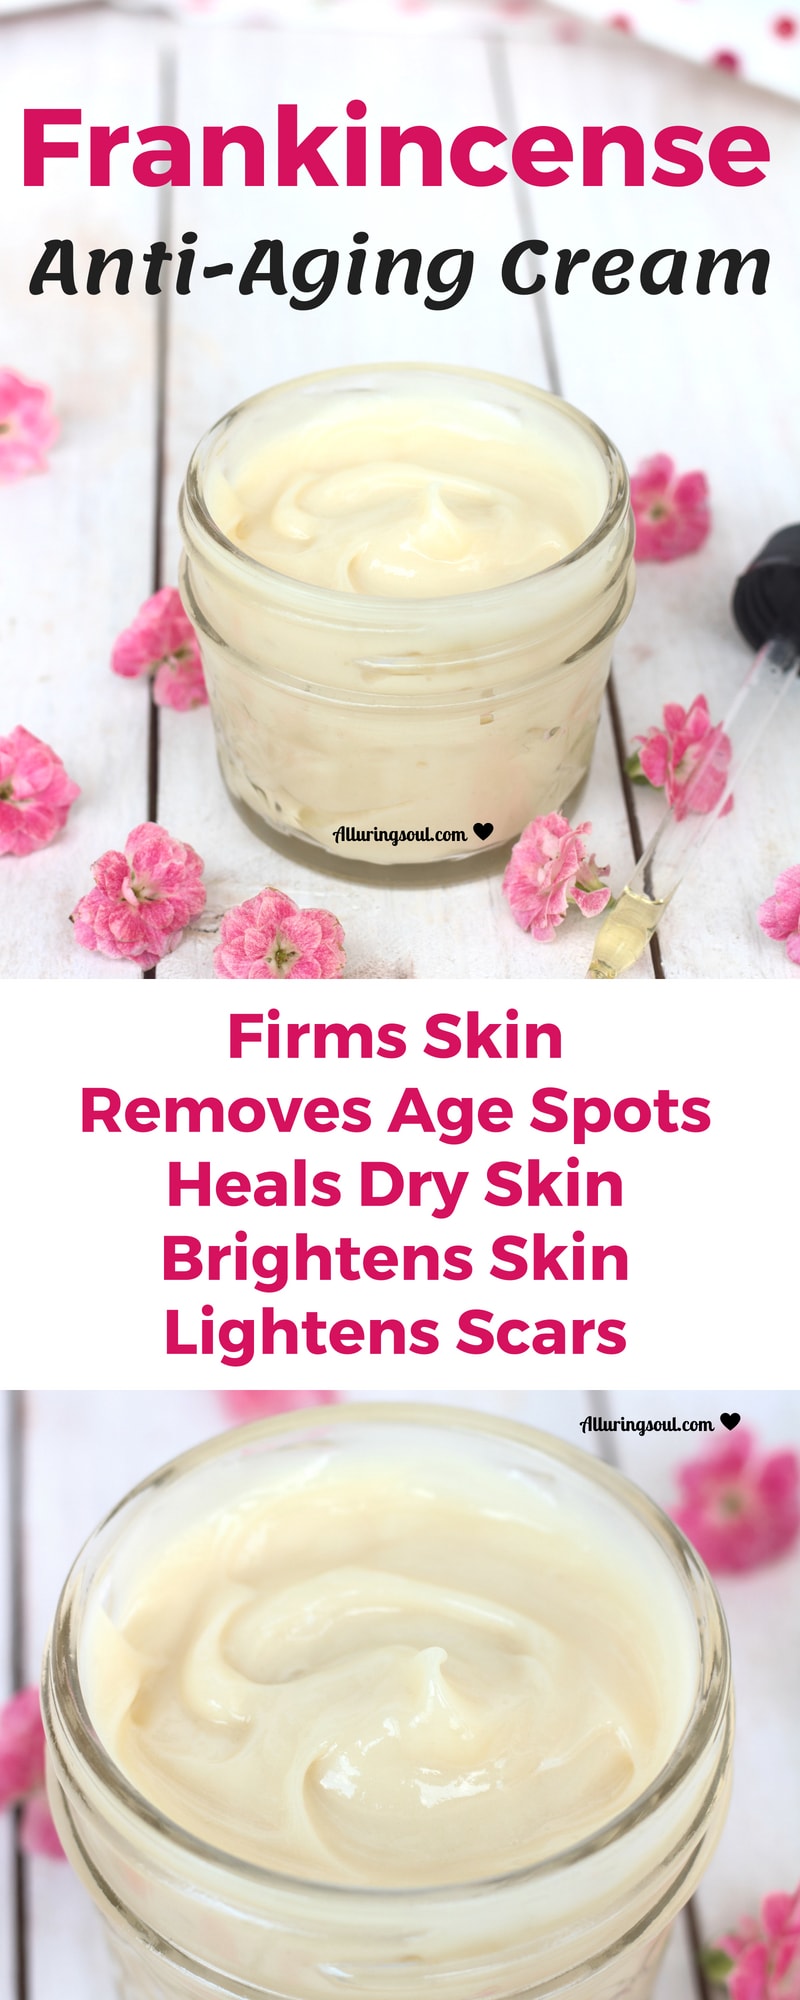 anti-aging skin care recipes